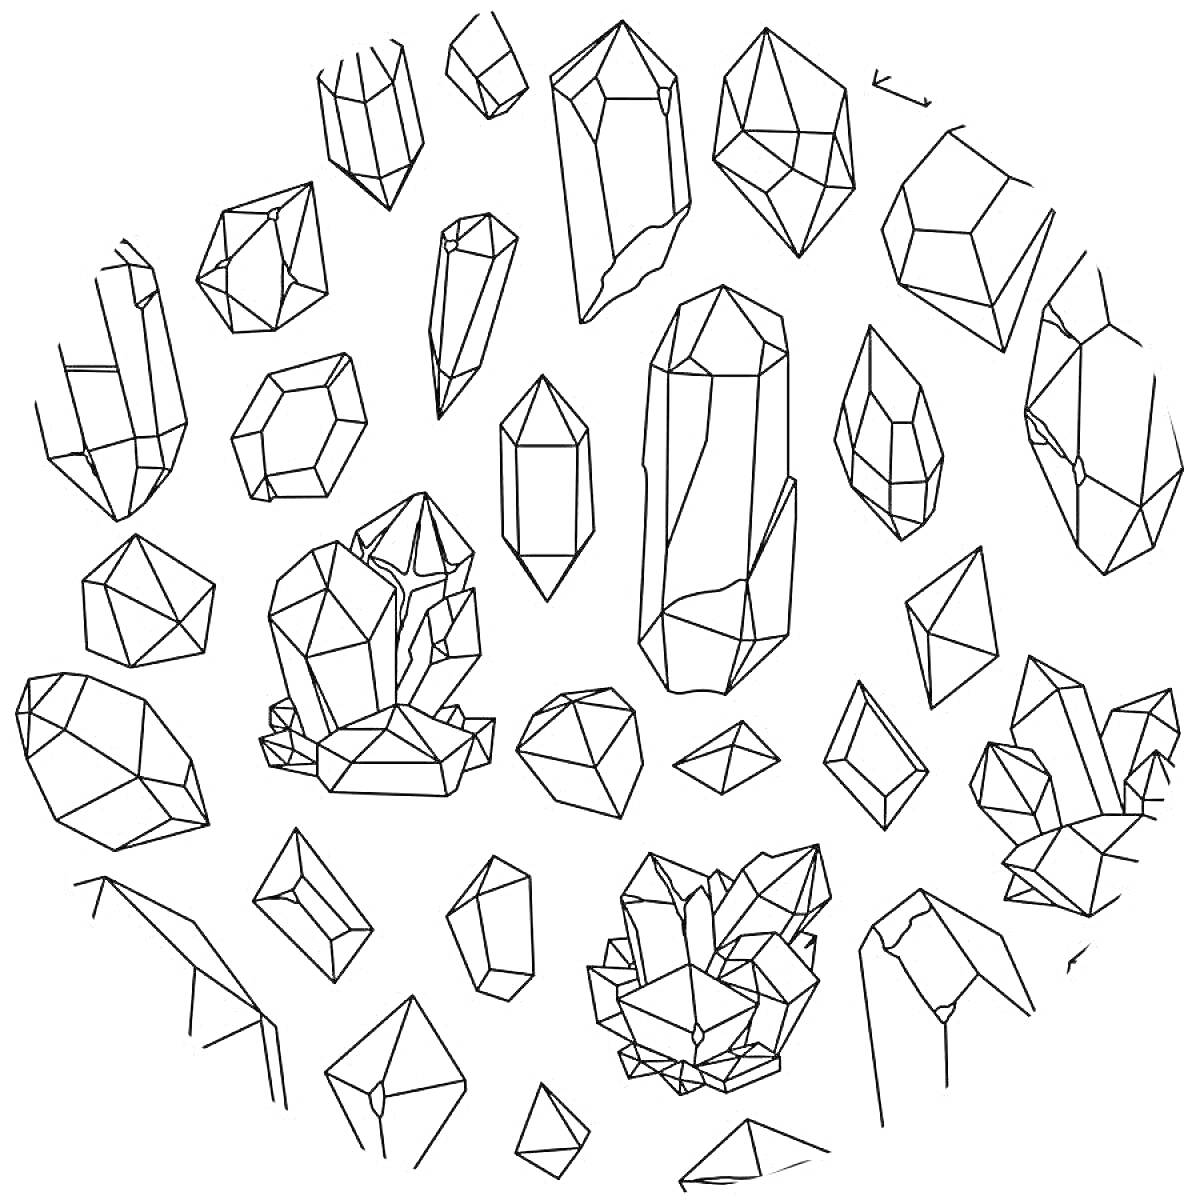 Разнообразие кристаллов (различные формы и размеры кристаллов, расположенные по кругу)